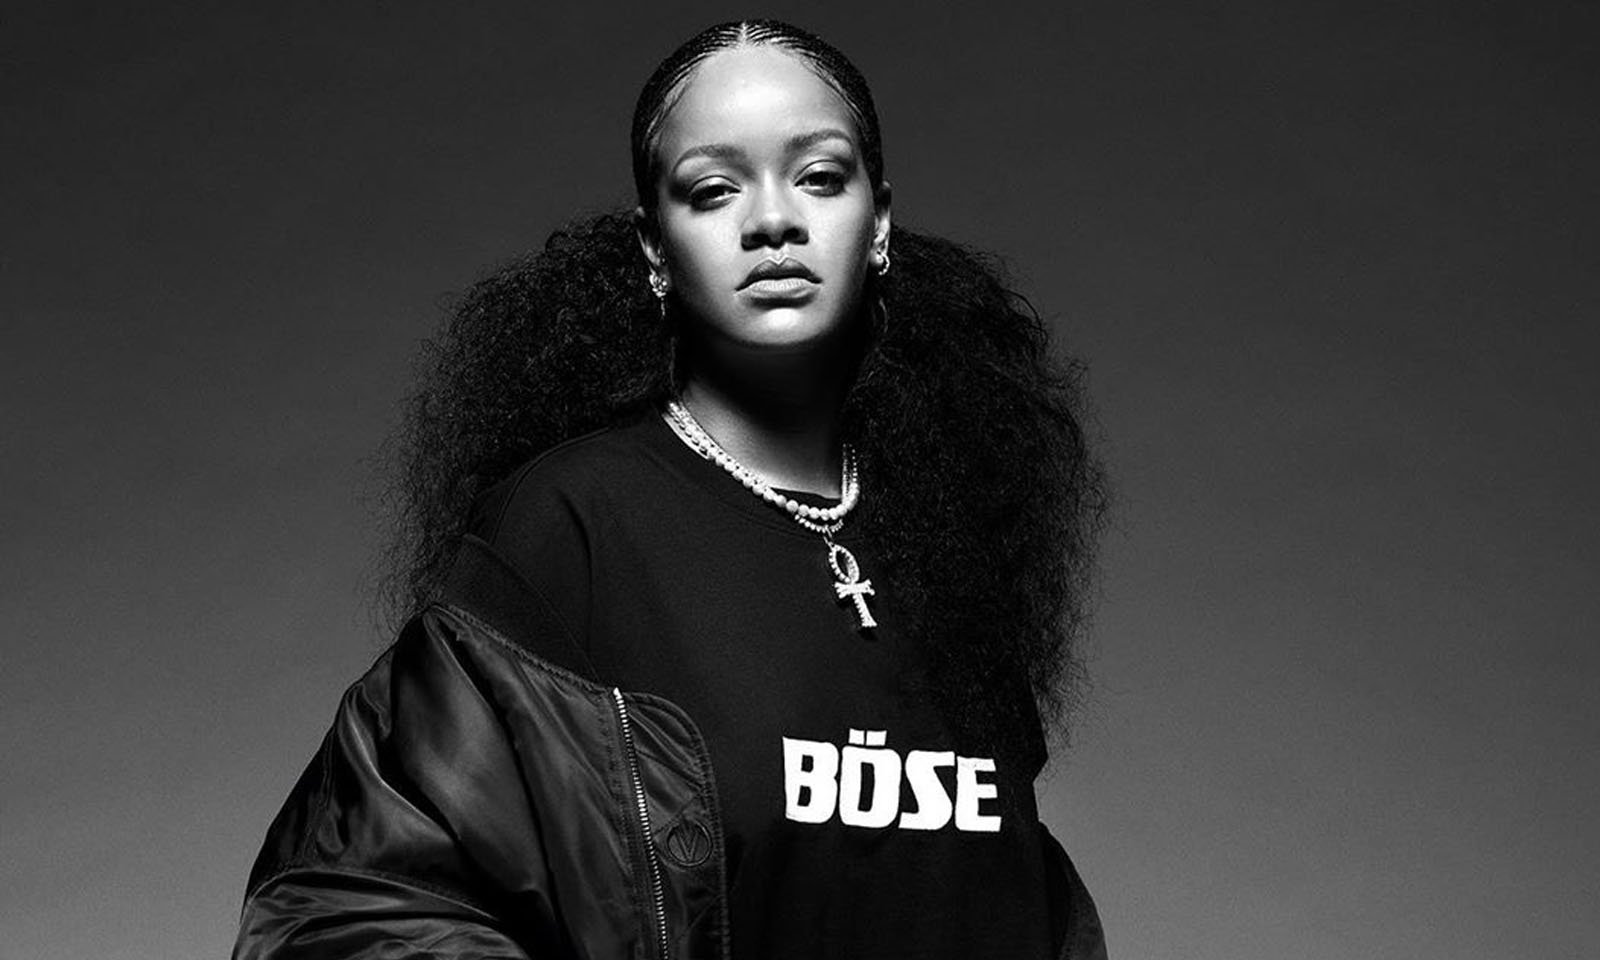 Rihanna doa 11 milhões de dólares para a luta contra o racismo